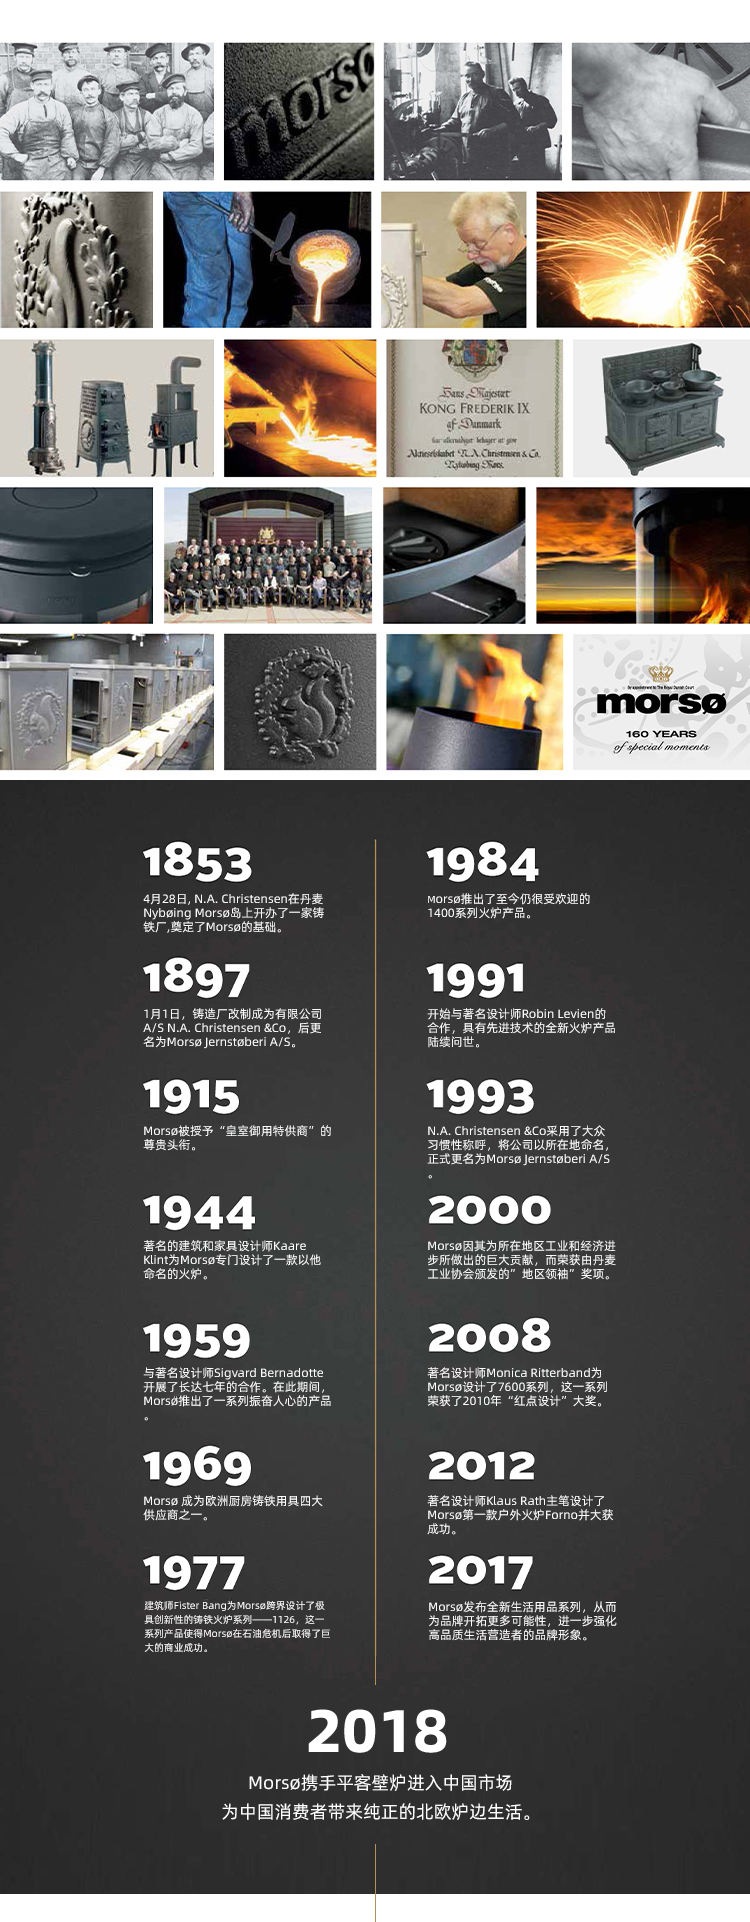 丹麥嵌入式鋼板壁爐Morso  S101.jpg